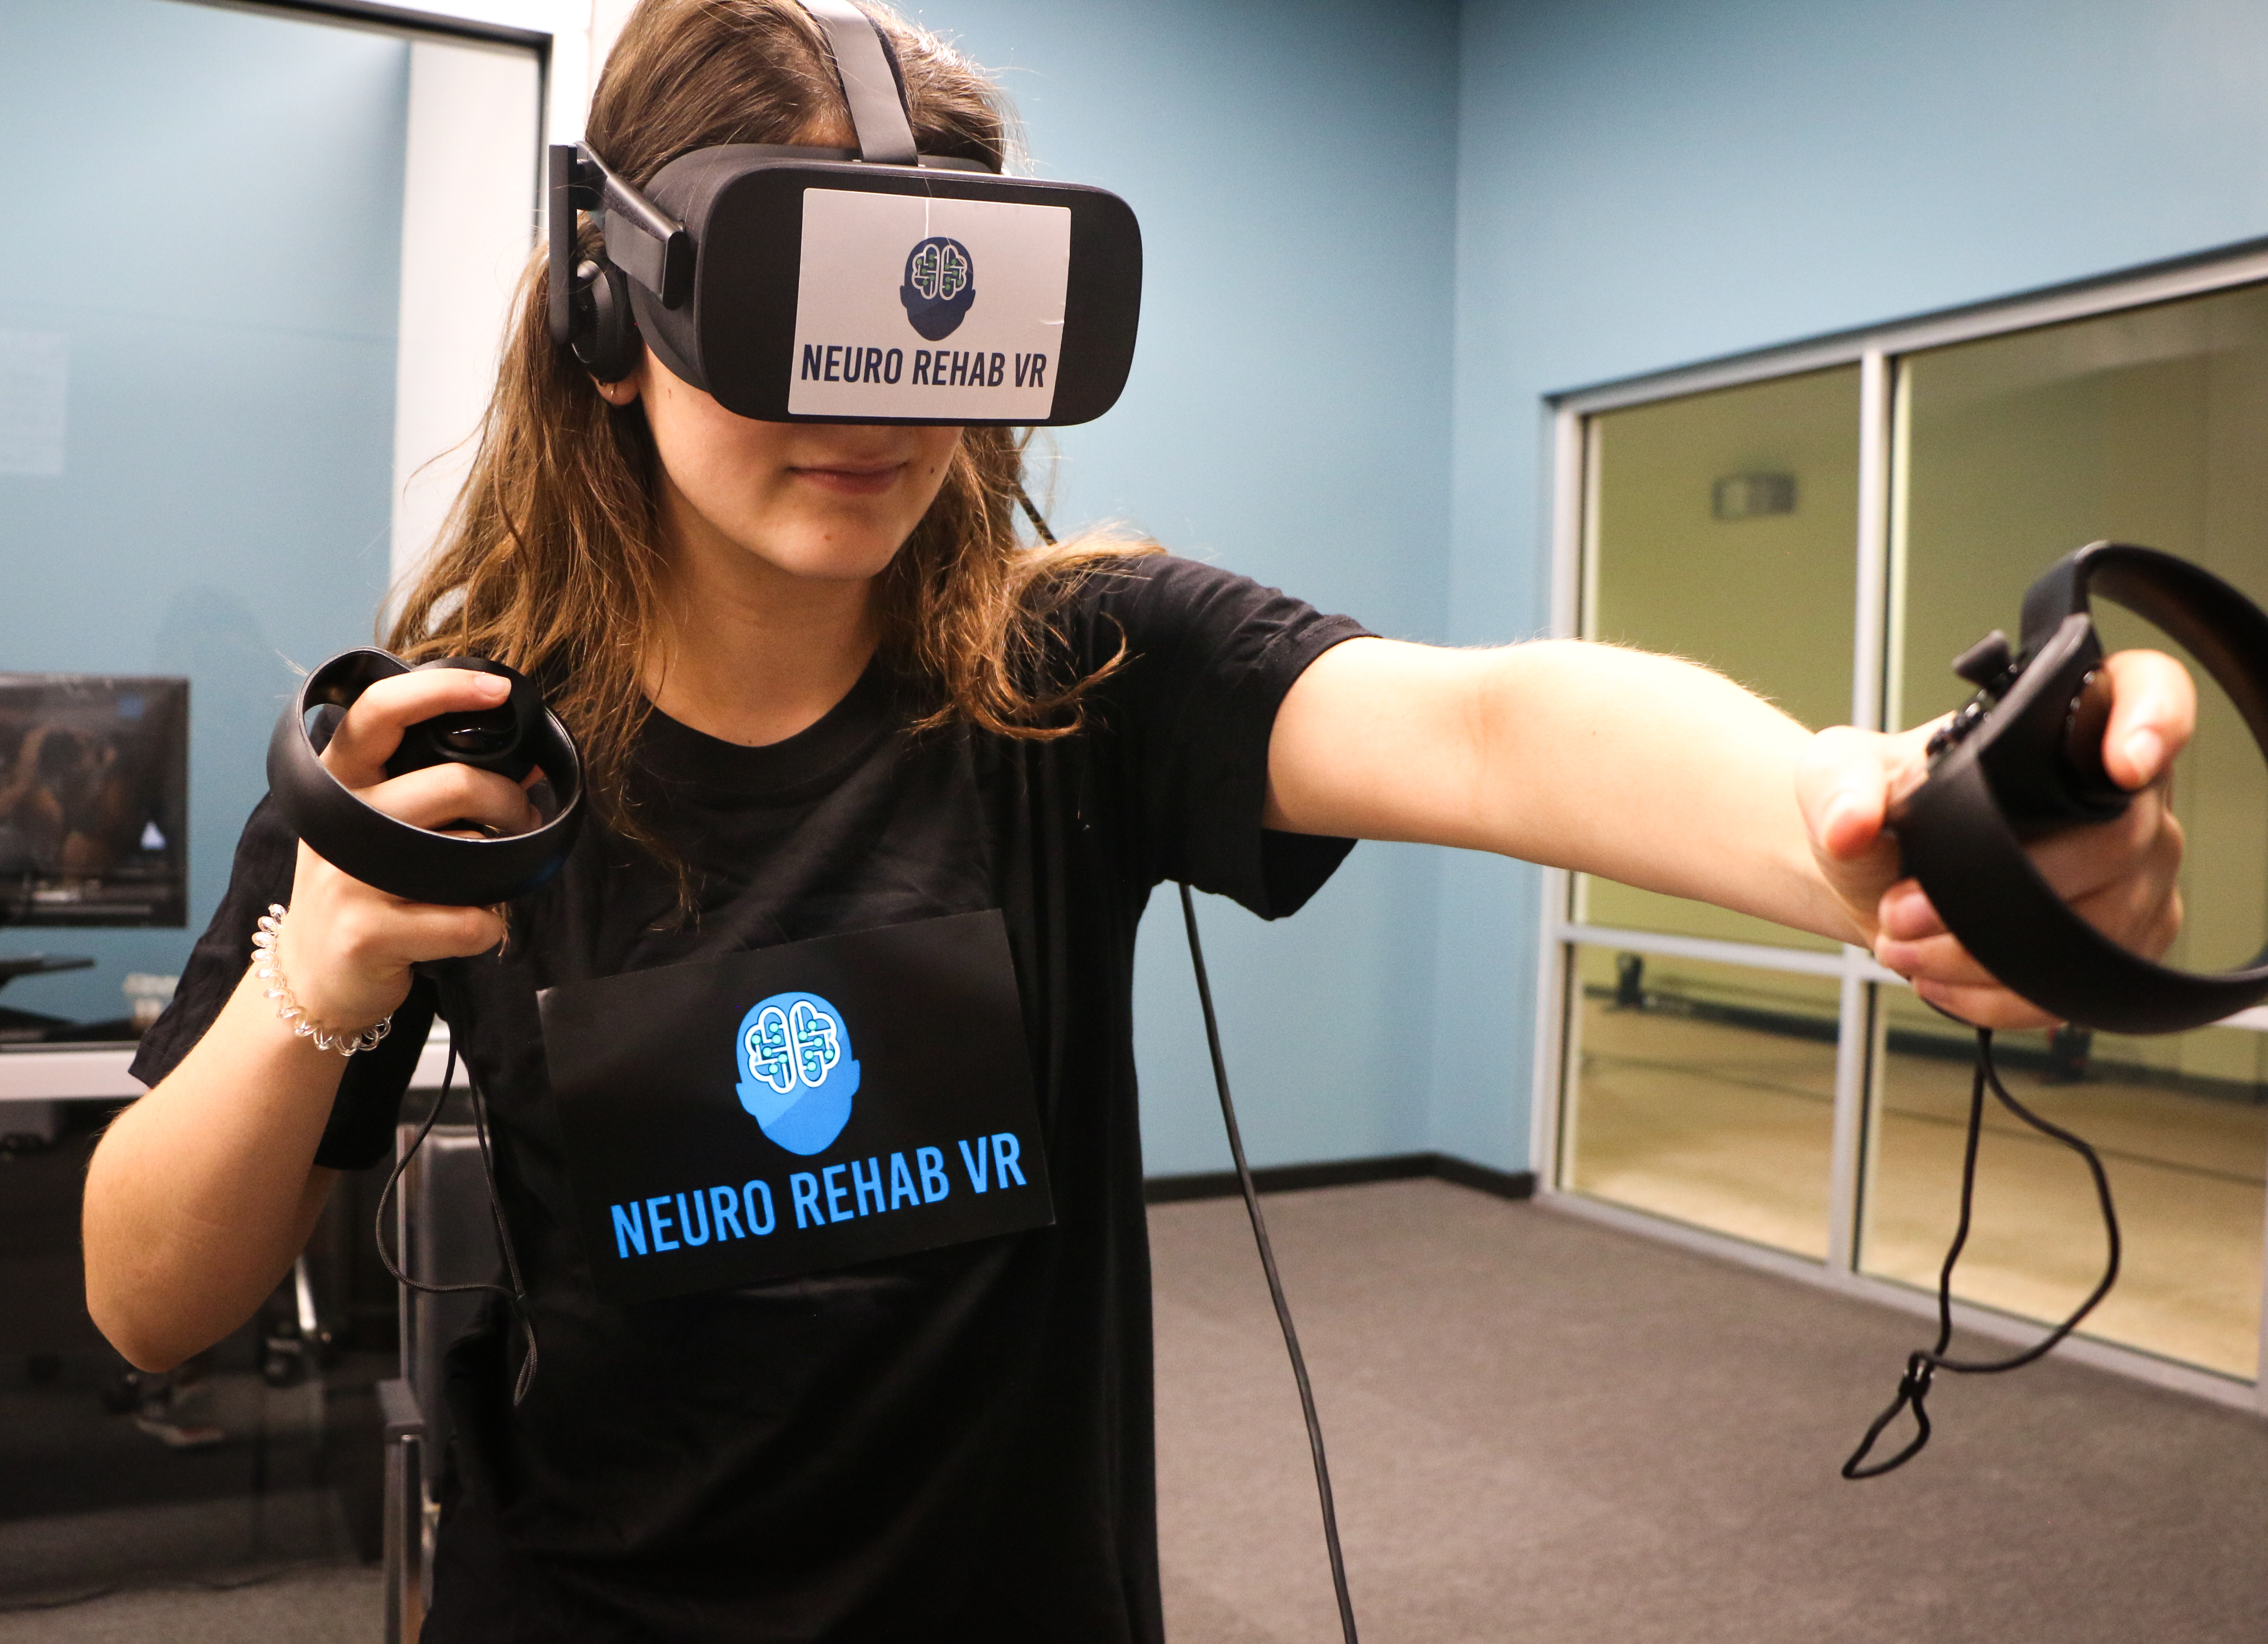 Stor Hest champignon Neuro Rehab VR – Neurological Recovery Center